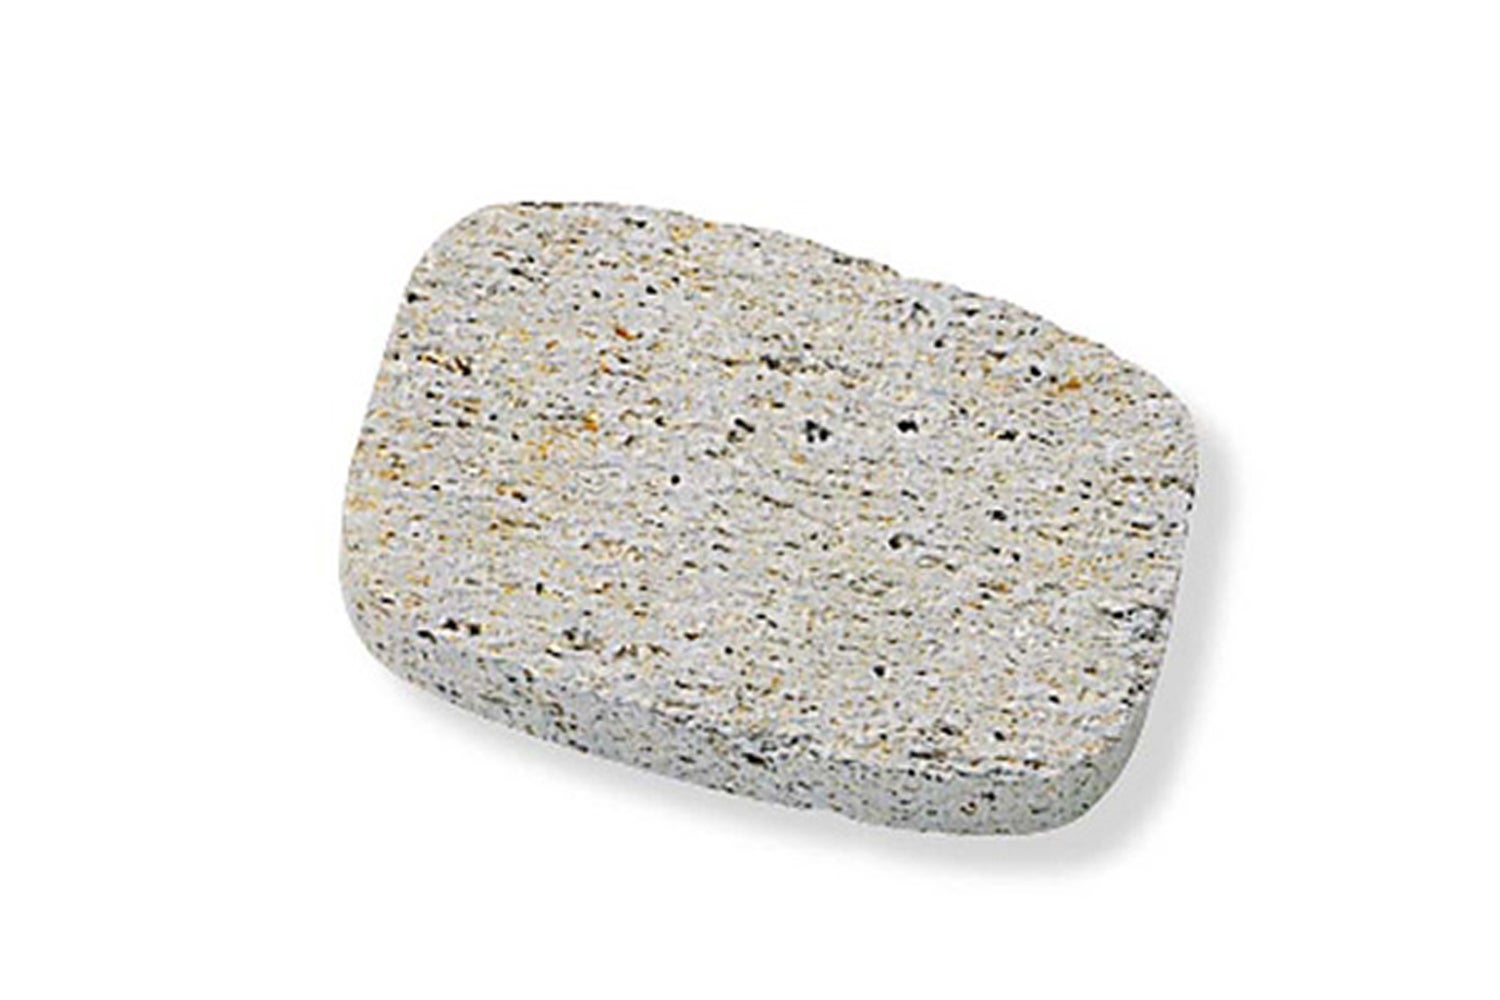 Piedra pómez